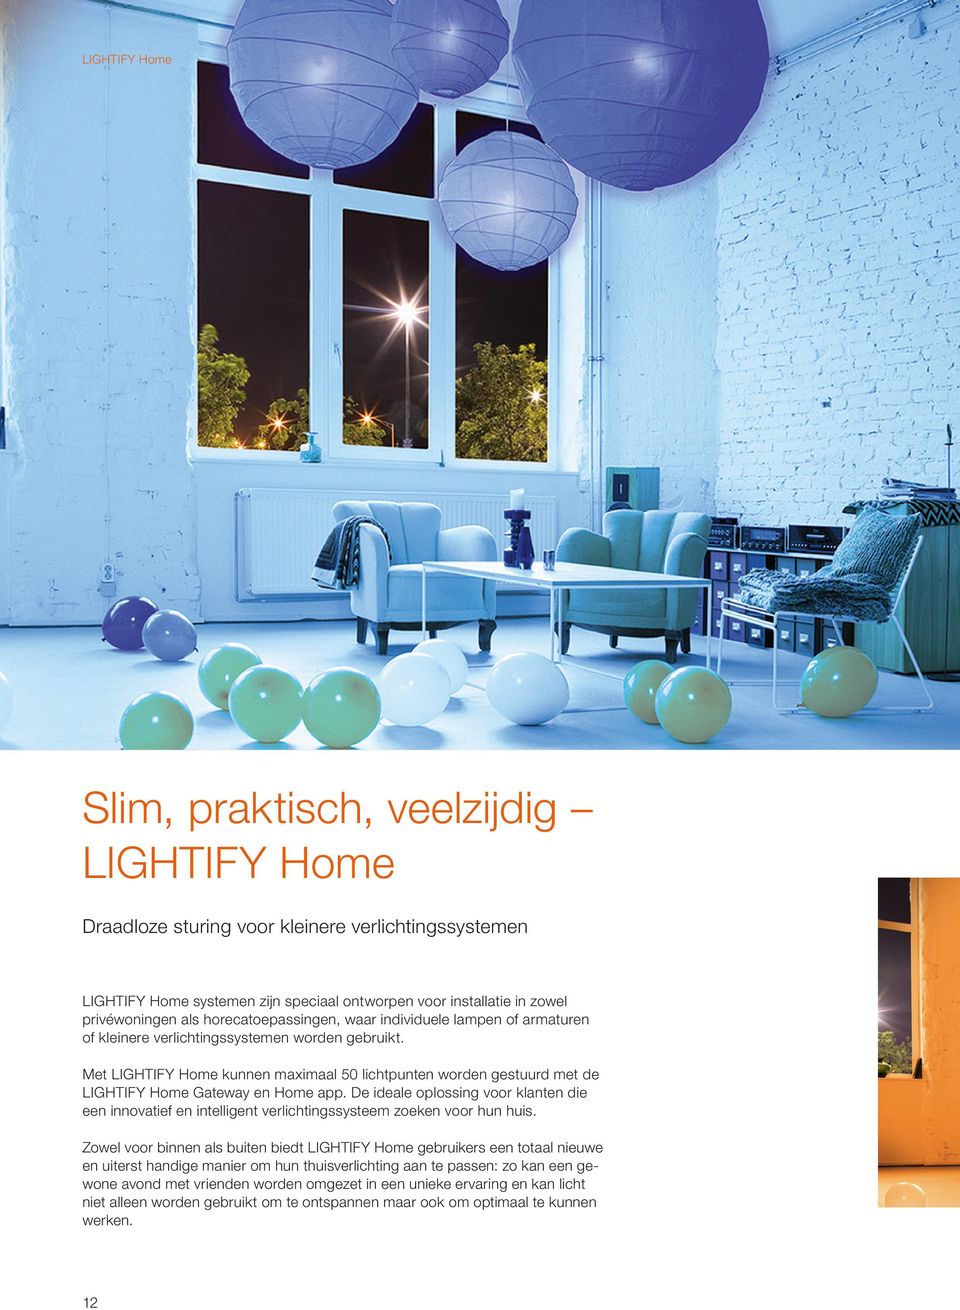 Met LIGHTIFY Home kunnen maximaal 50 lichtpunten worden gestuurd met de LIGHTIFY Home Gateway en Home app.